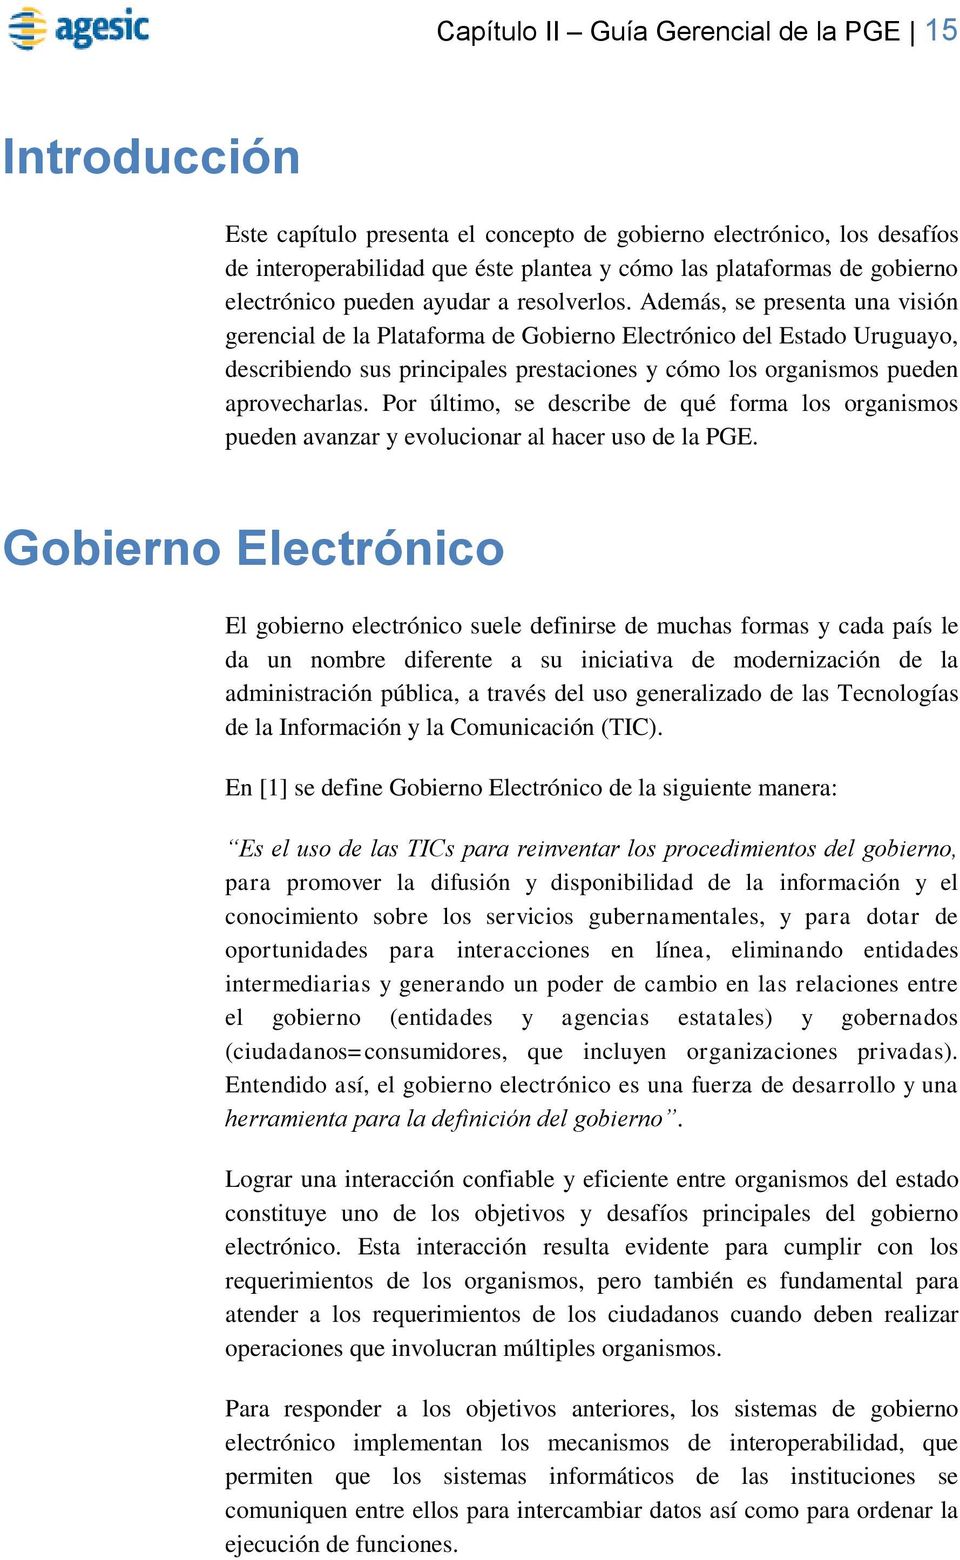 Además, se presenta una visión gerencial de la Plataforma de Gobierno Electrónico del Estado Uruguayo, describiendo sus principales prestaciones y cómo los organismos pueden aprovecharlas.